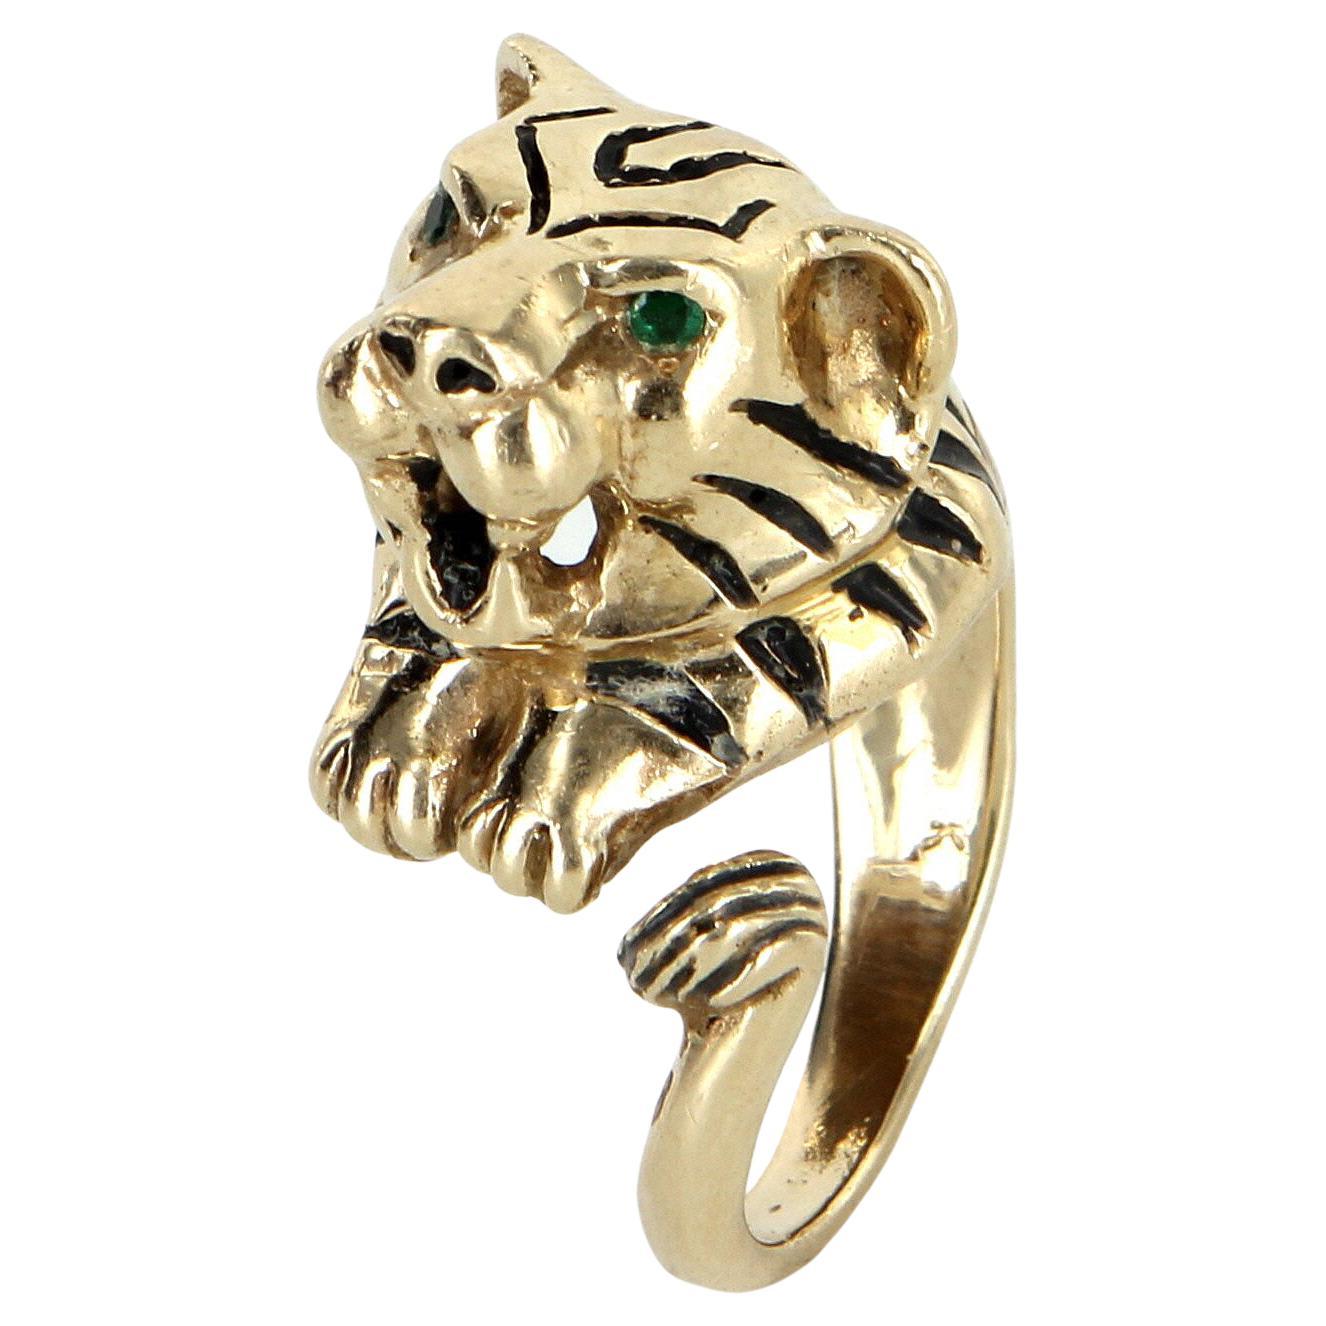 Bengal Tiger Ring Vintage 14k Yellow Gold Black Enamel Estate Animal Jewelry